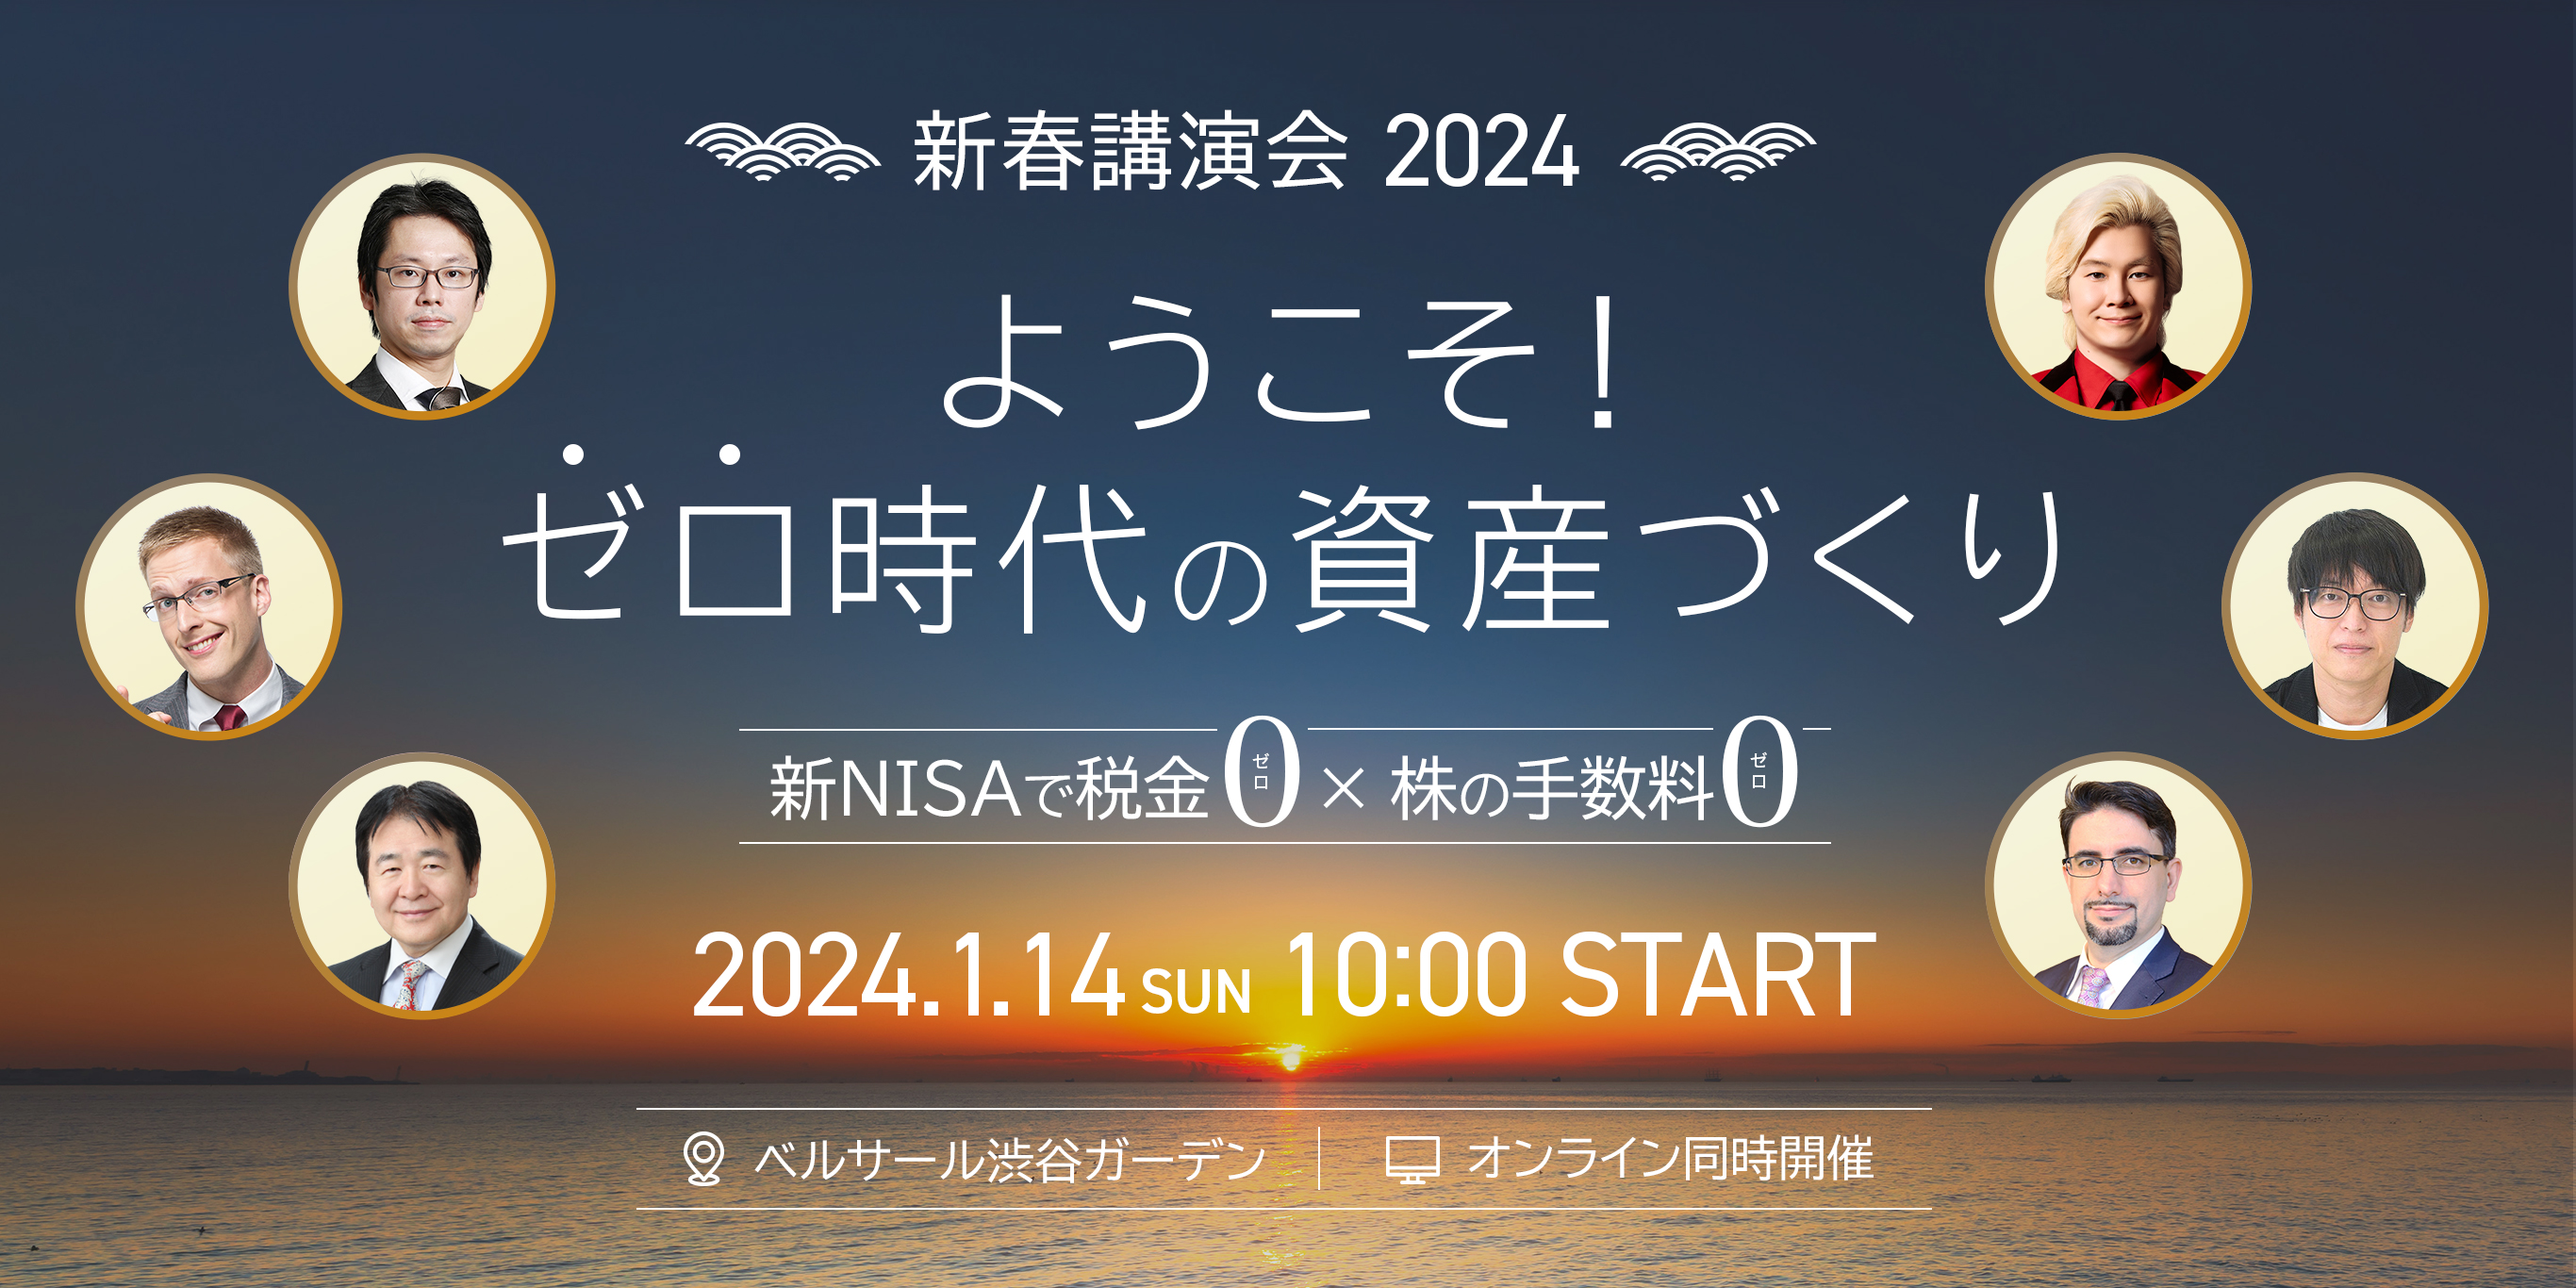 新春講演会 2024 ようこそゼロ時代の資産づくり 2024.1.14 SUN 10:00 START